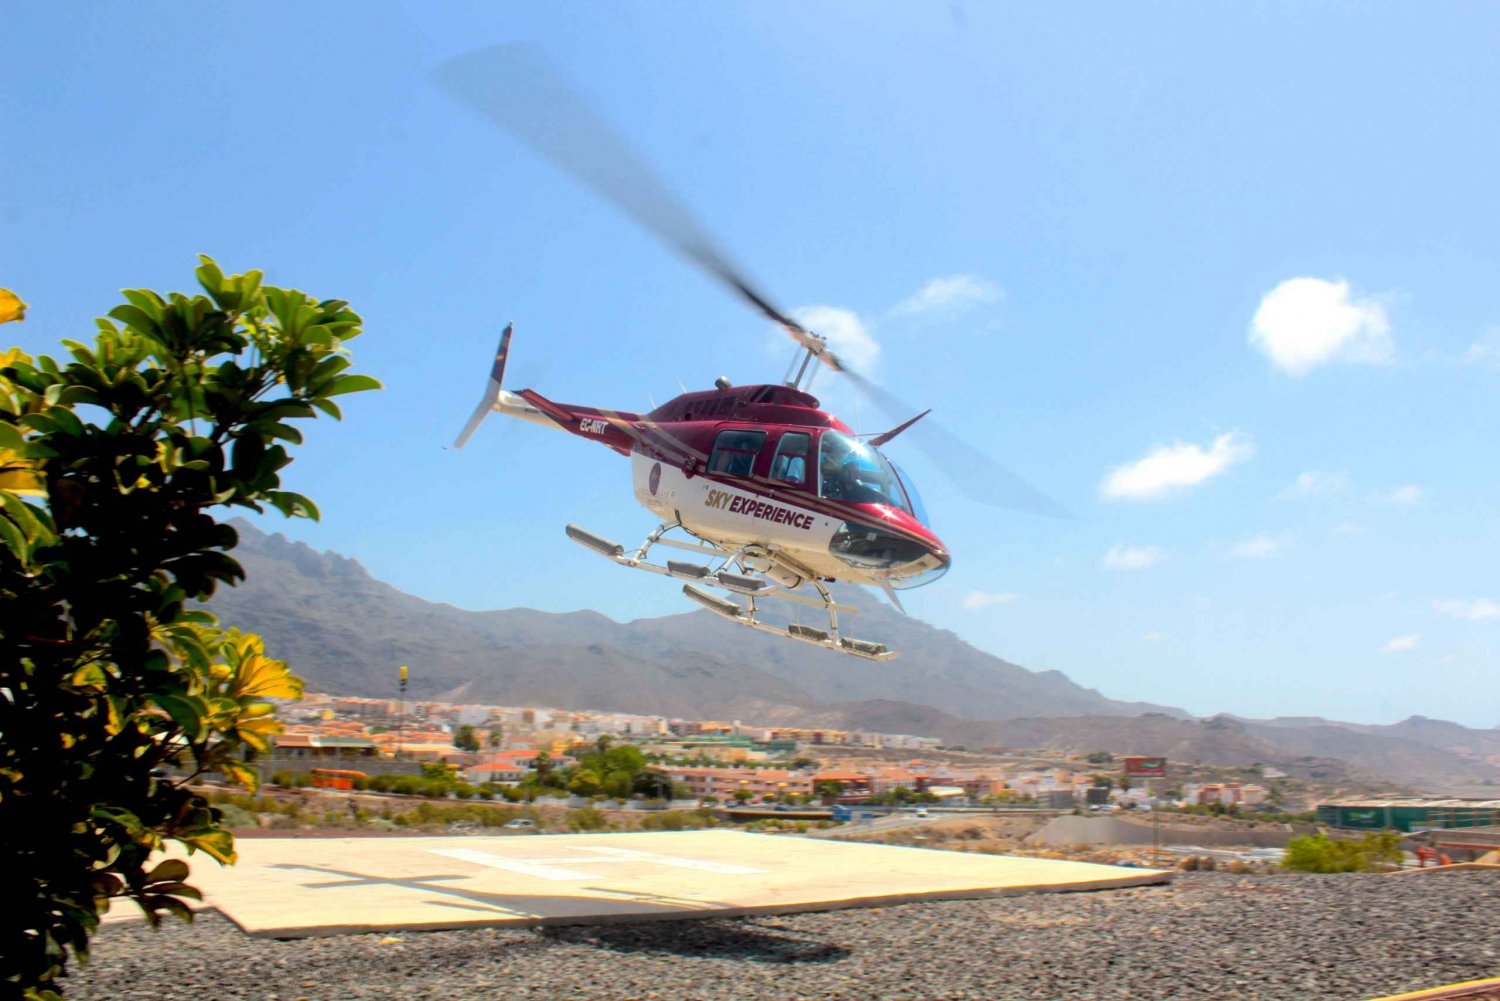 Adeje: Widokowy lot helikopterem na Teneryfie